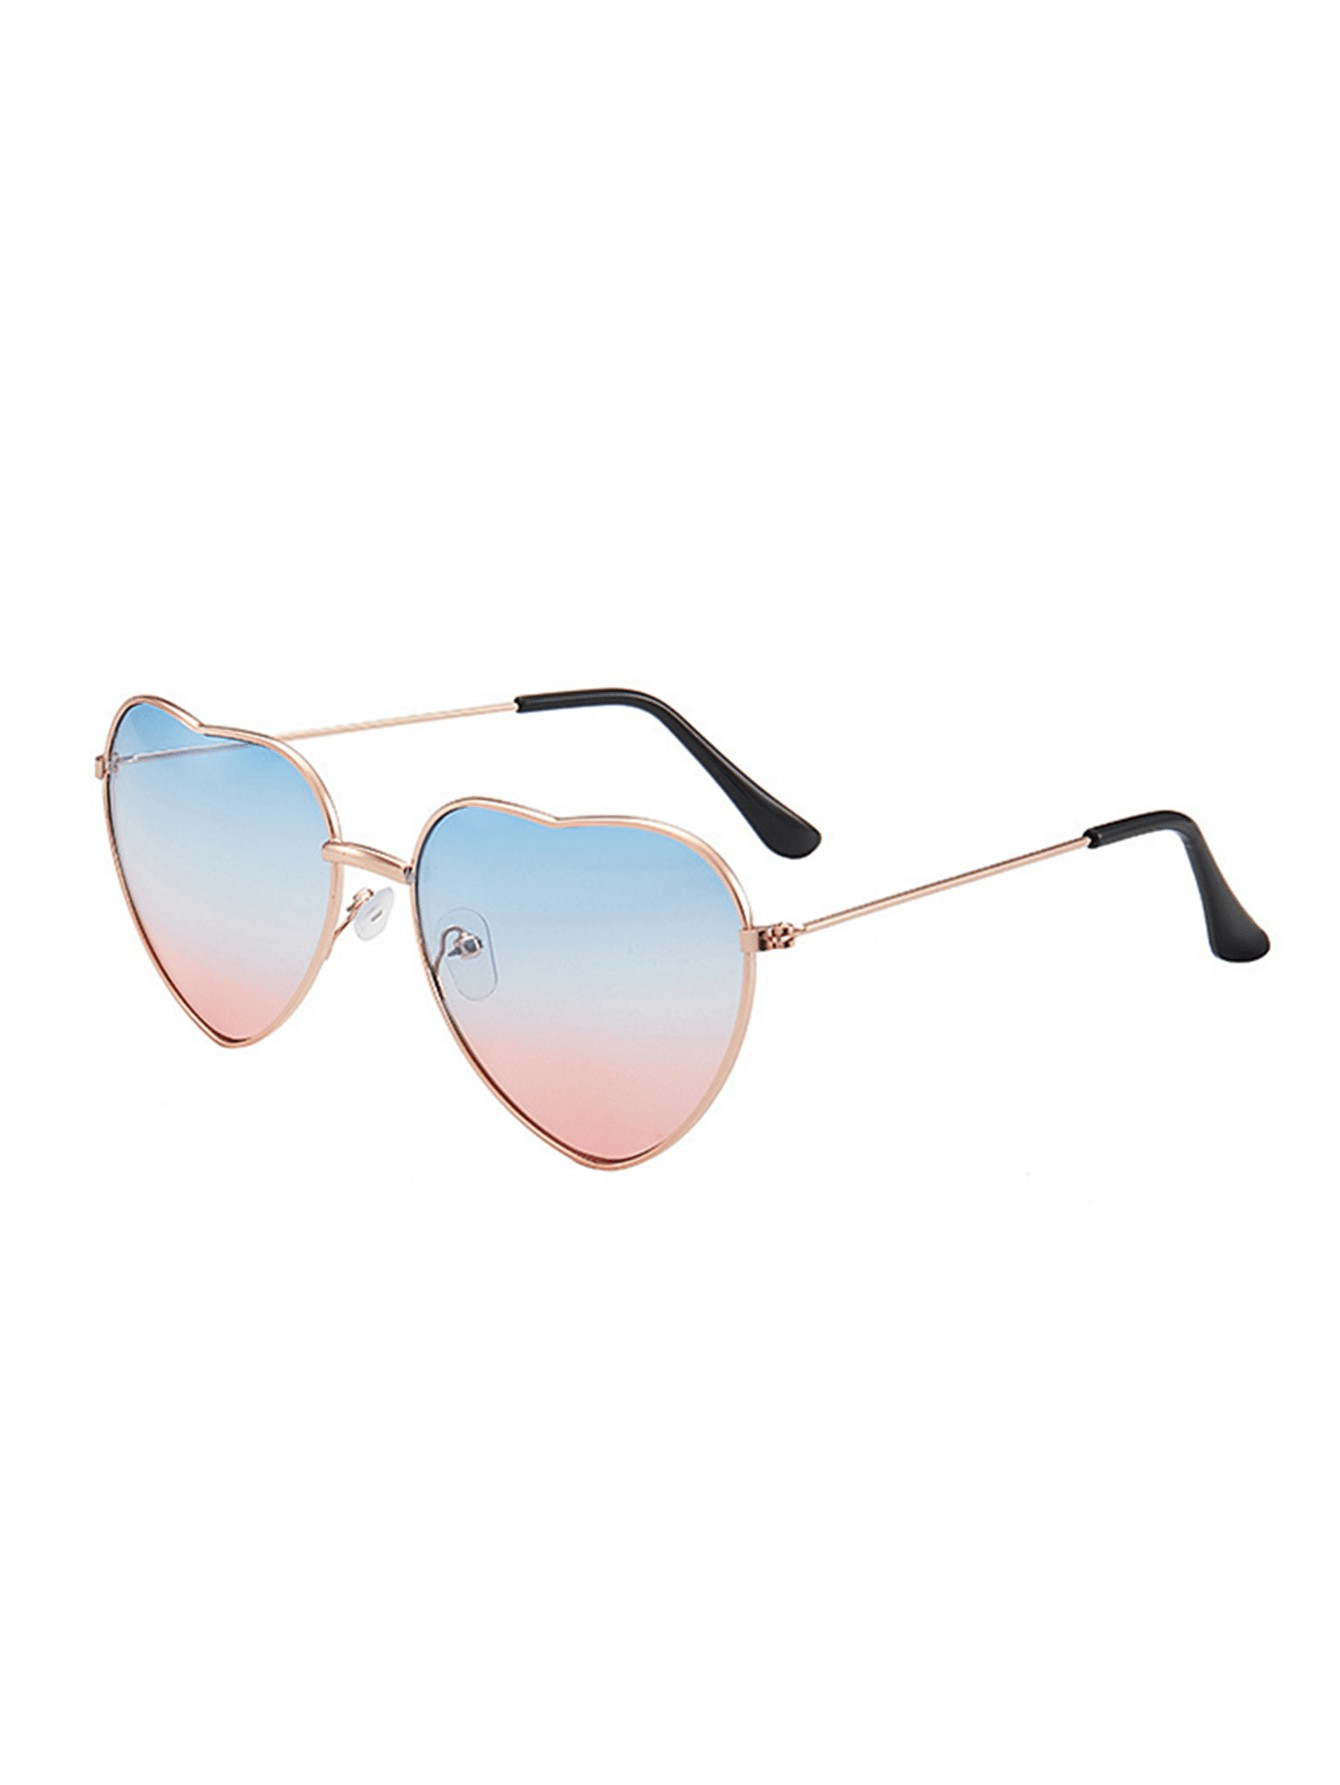 1шт винтажные металлические солнцезащитные очки в форме сердца с линзами в форме сердца океанского цвета для женщин